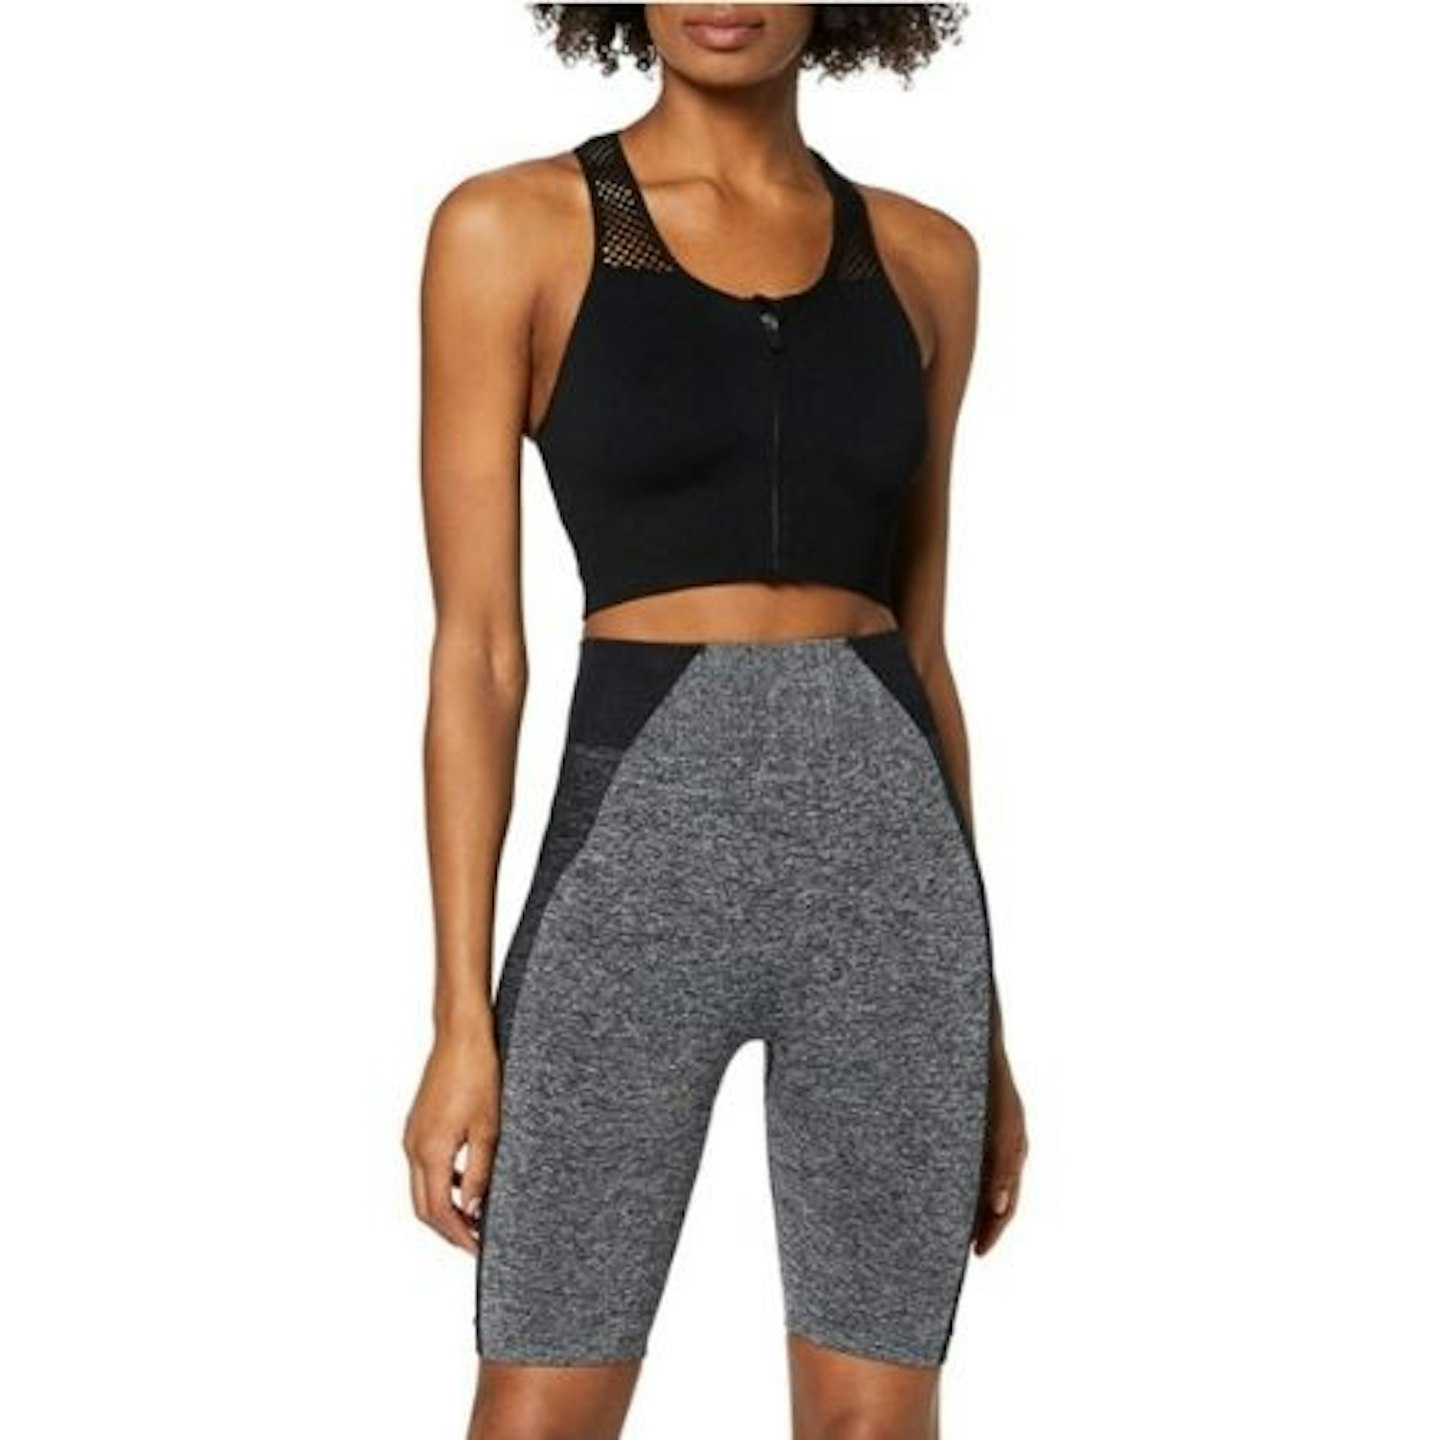 Amazon Brand - AURIQUE Women's Sports Shorts